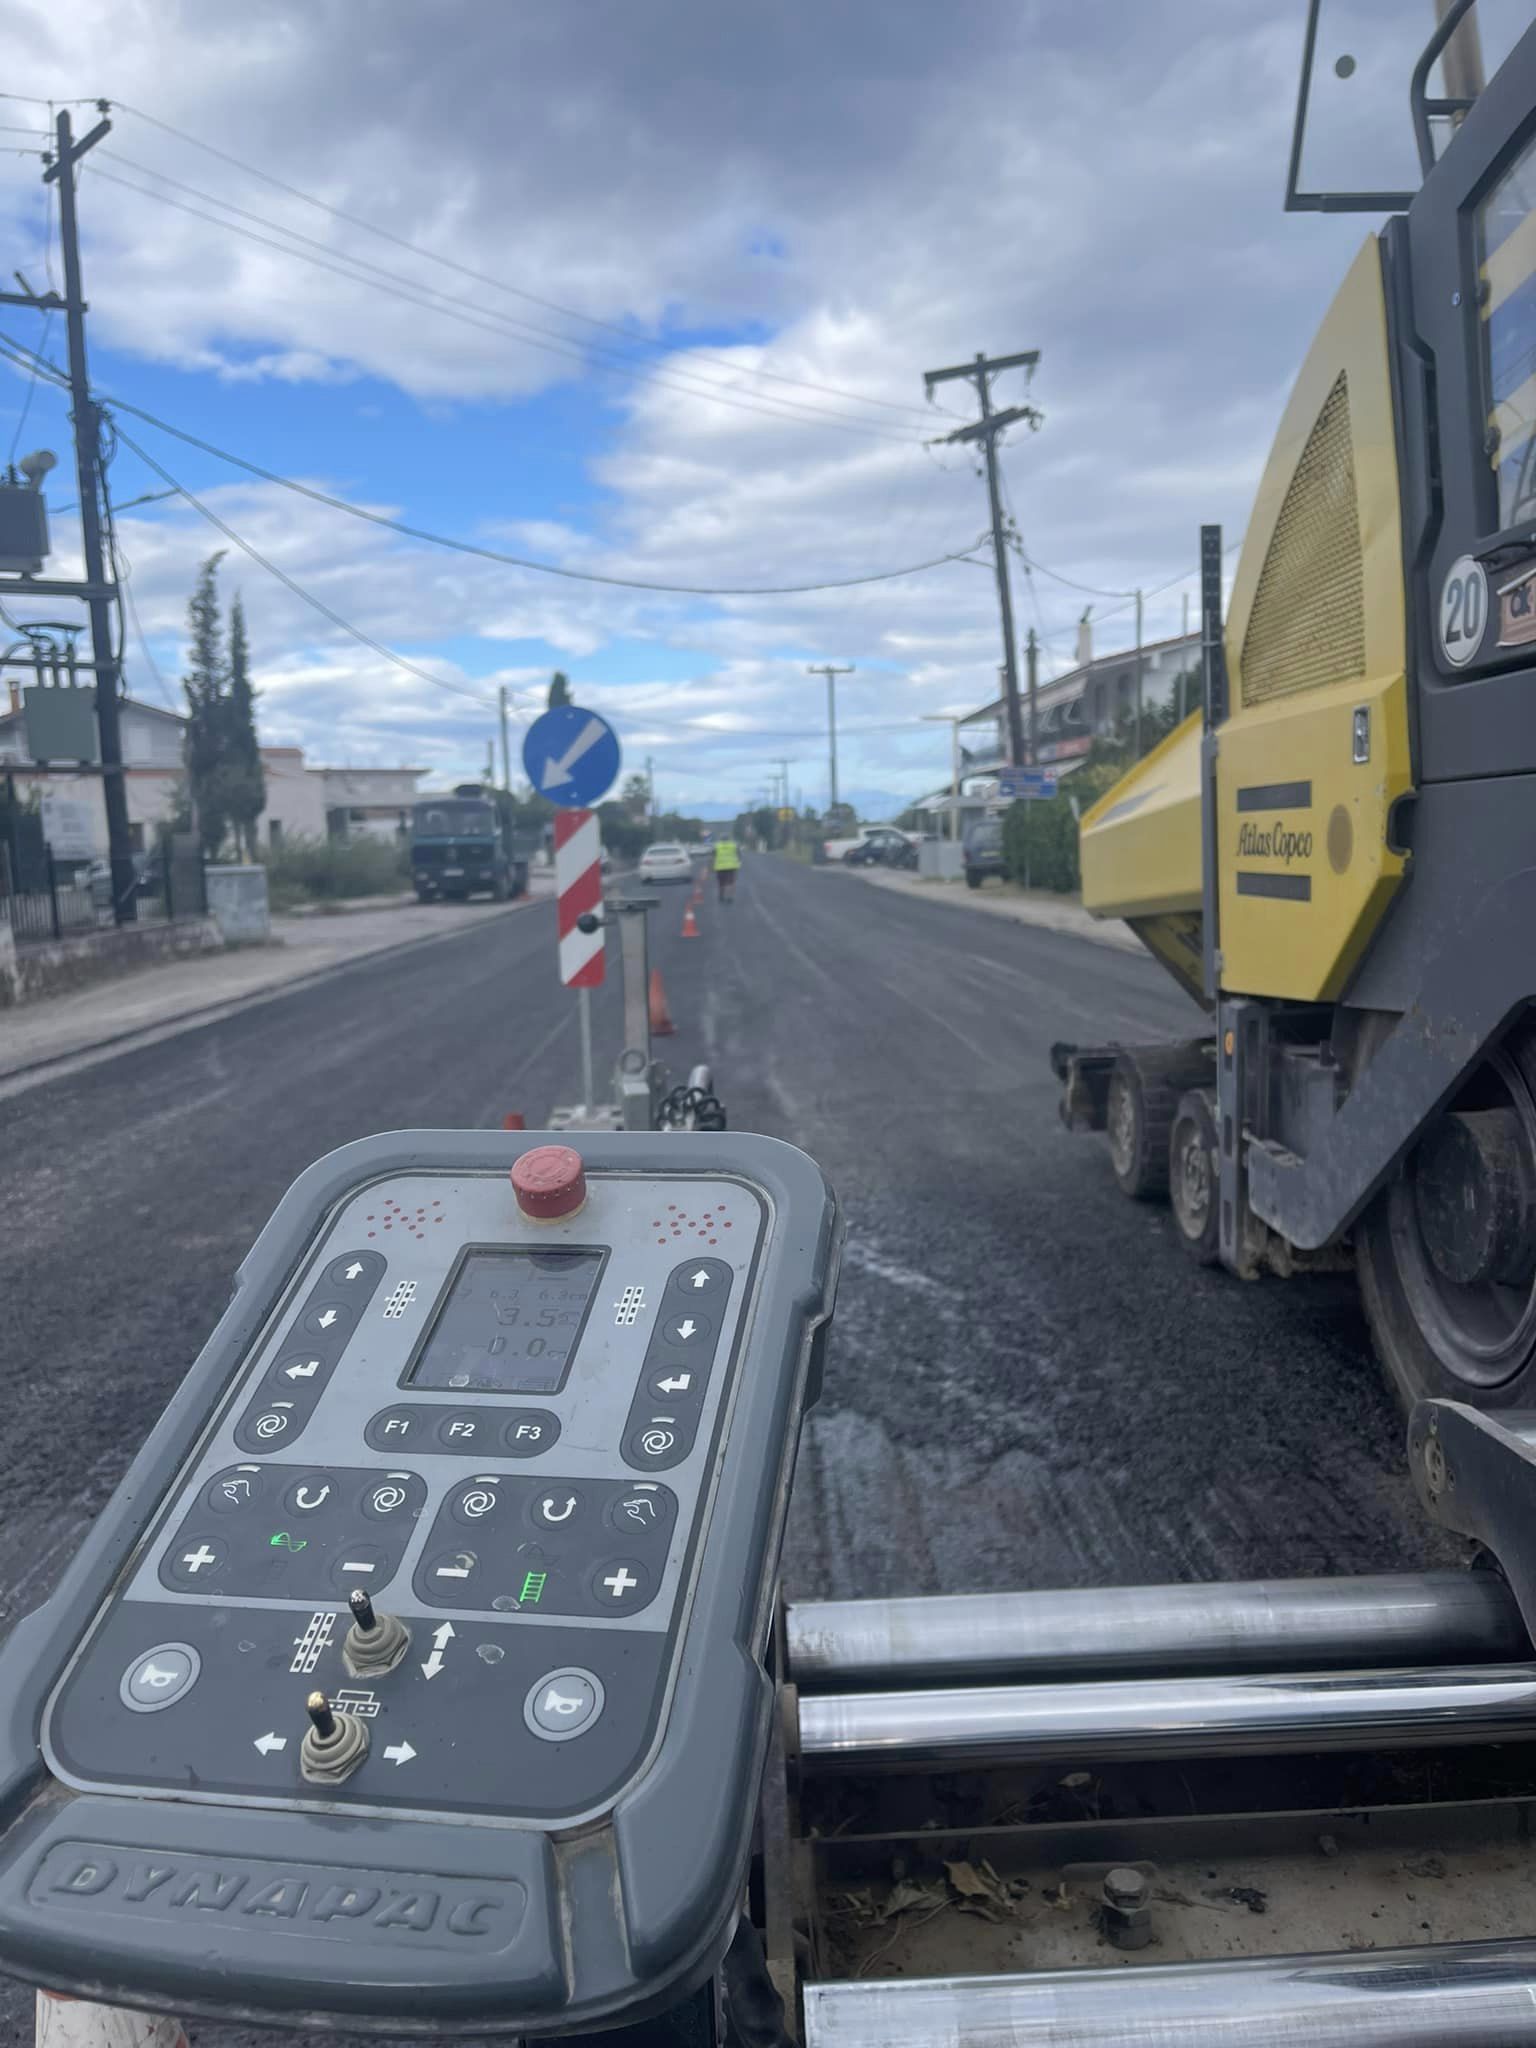 Εύβοια: Ξεκινά η αποκατάσταση και αναβάθμιση στις οδικές υποδομές του Δήμου Ιστιαίας